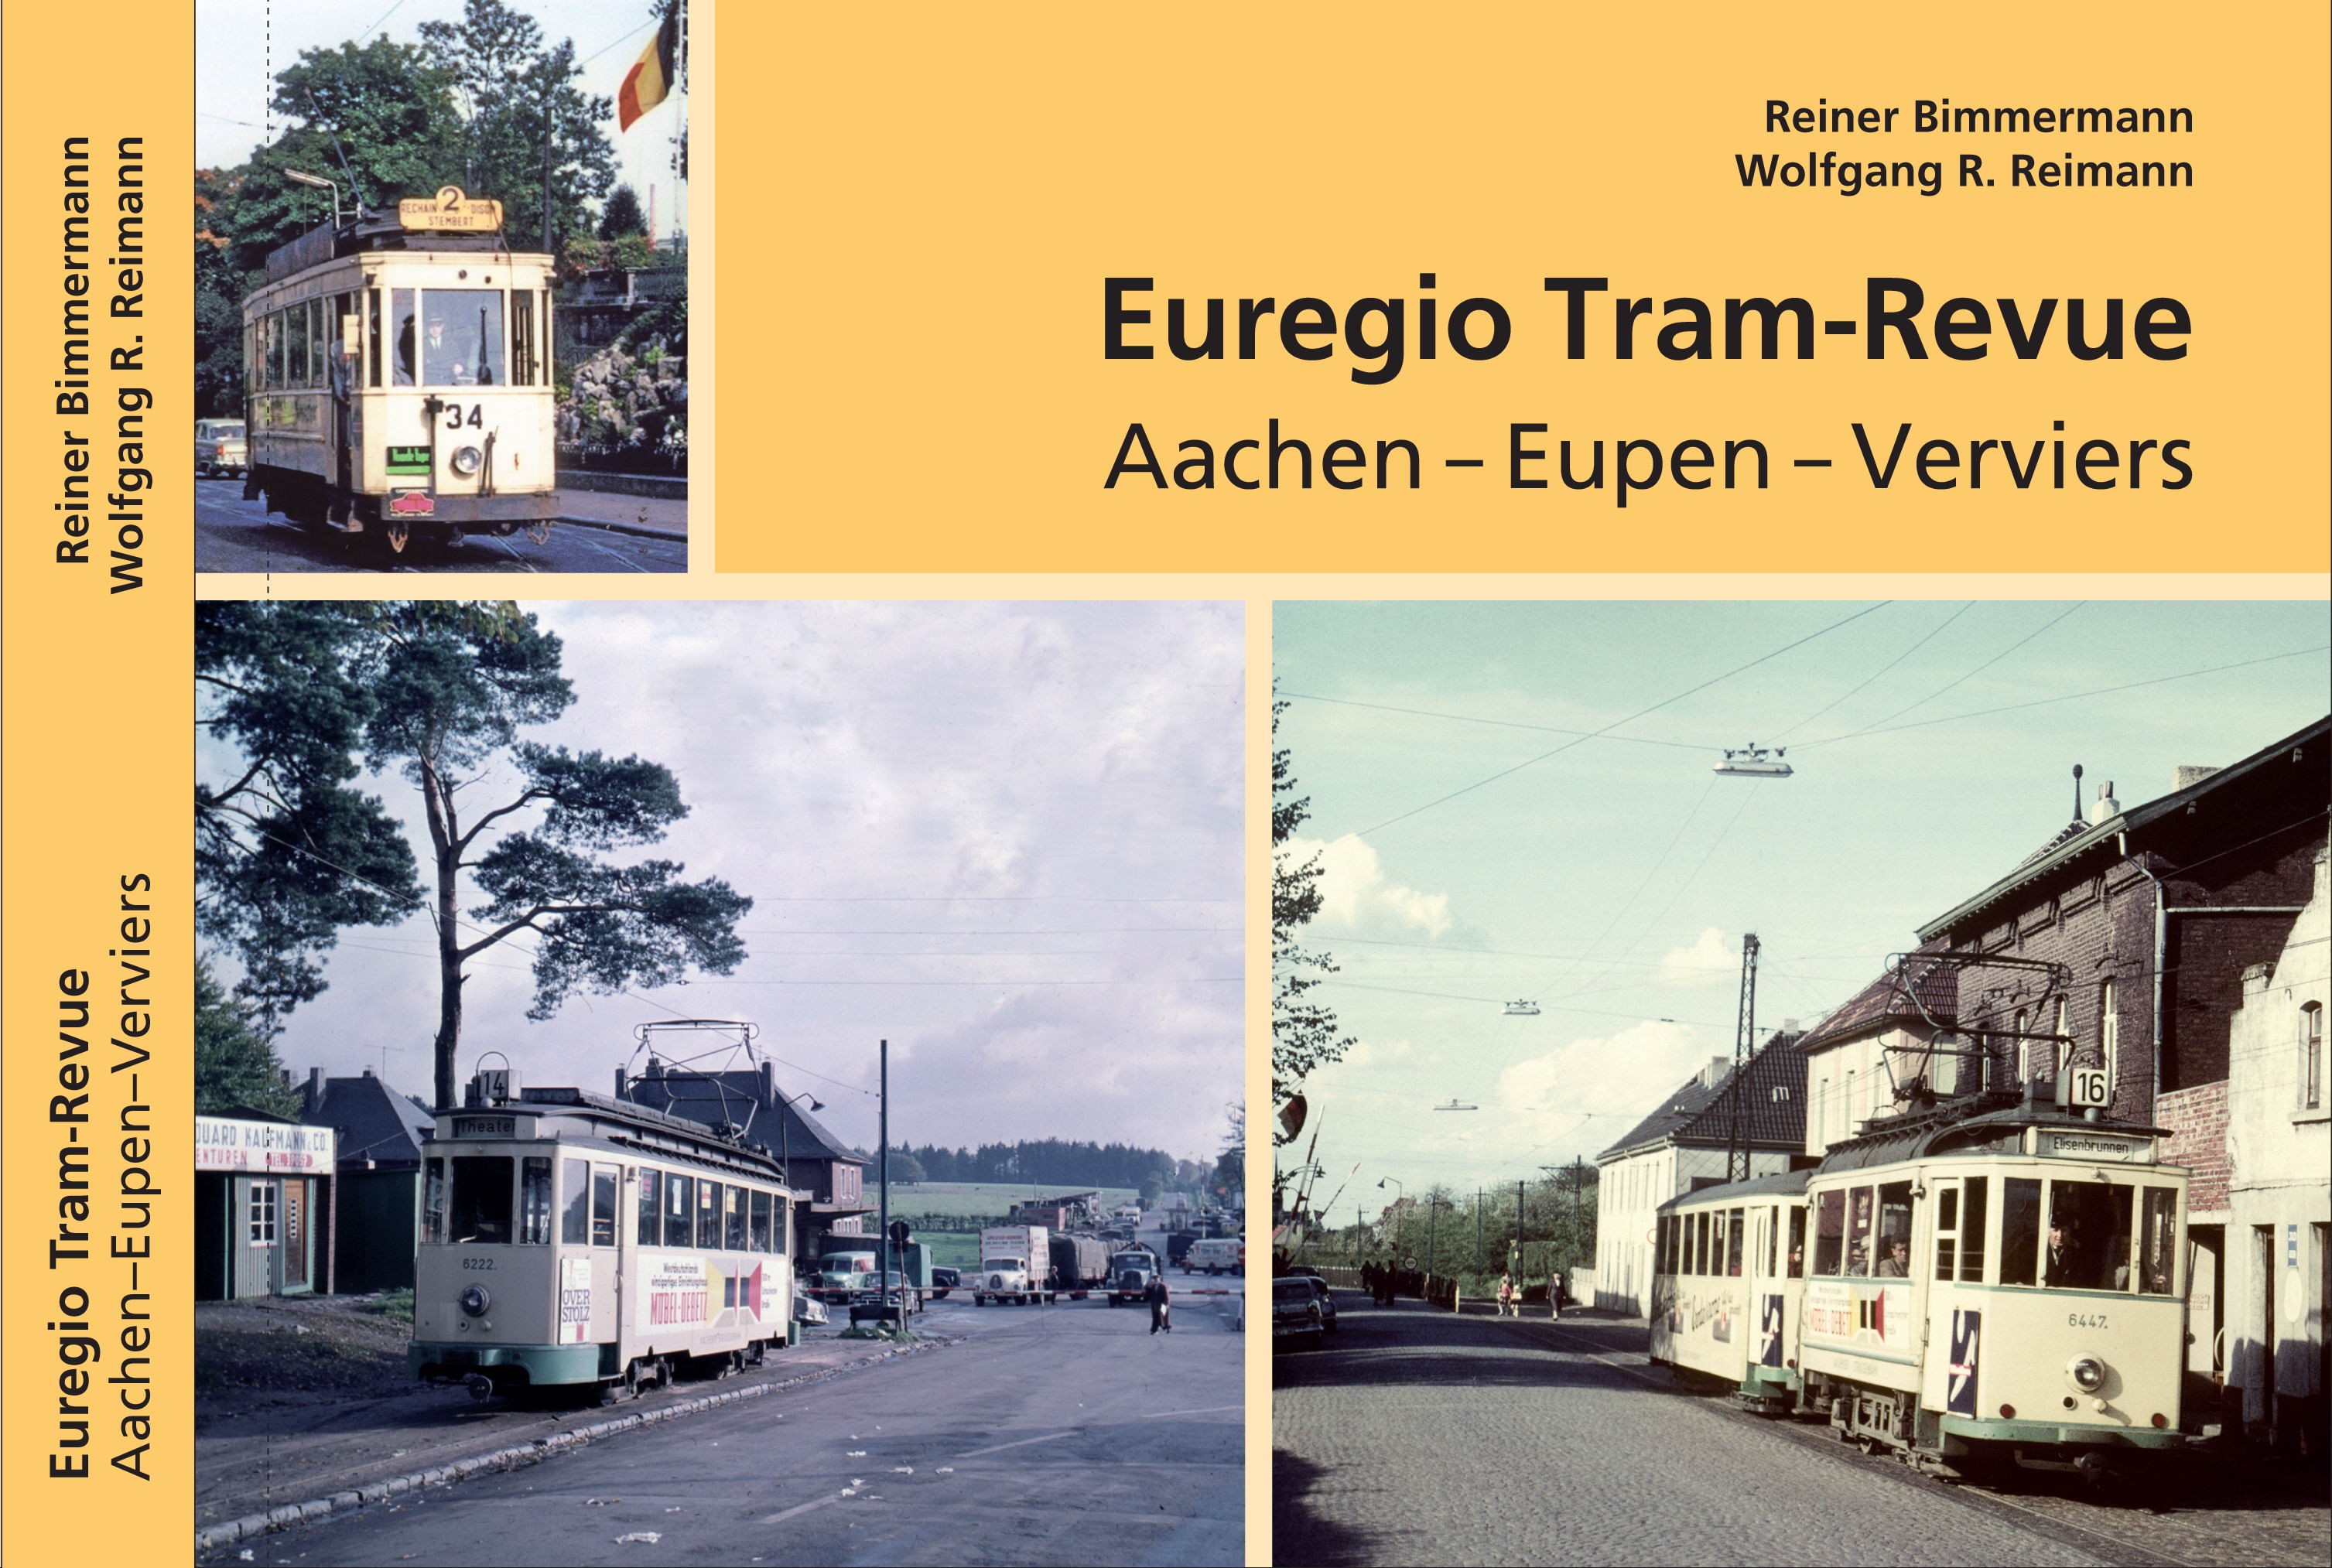 Euregio Tram-Revue Aachen / Eupen / Verviers